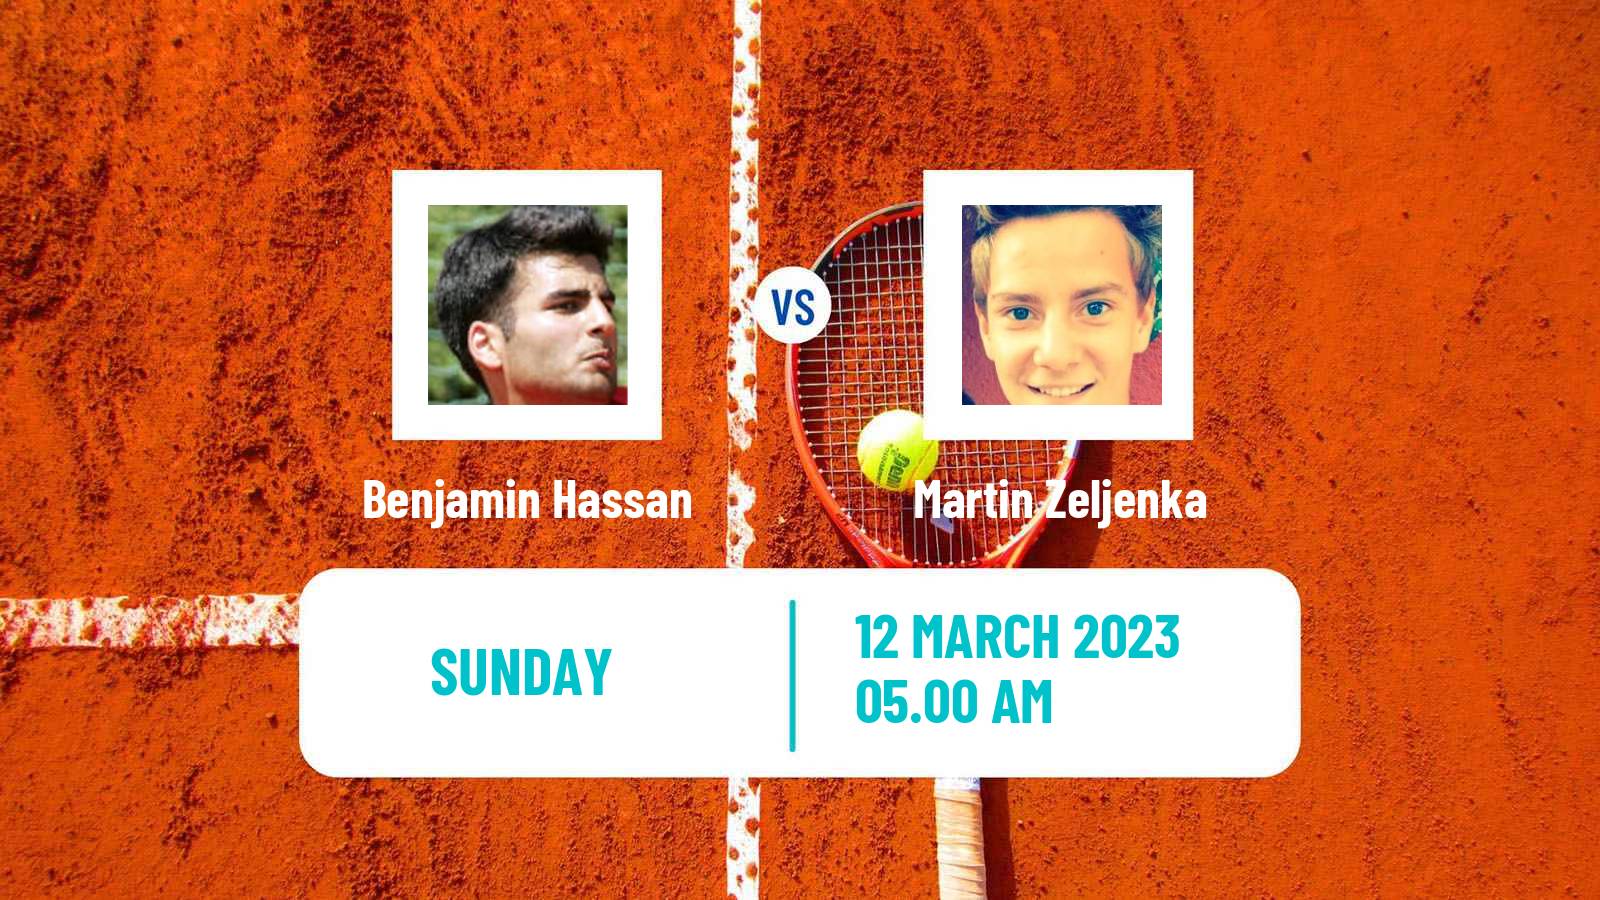 Tennis ATP Challenger Benjamin Hassan - Martin Zeljenka